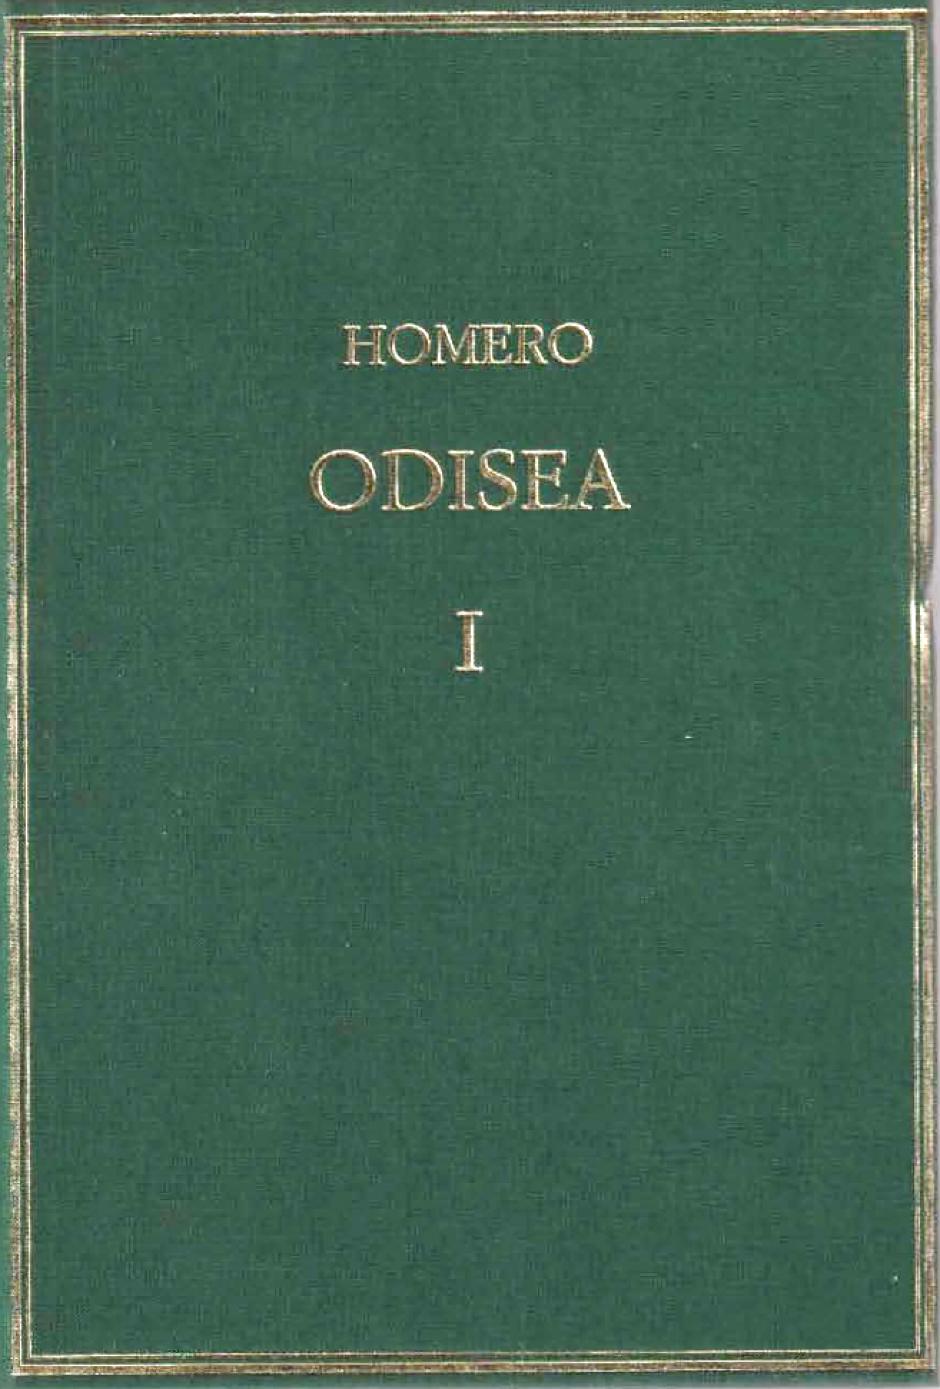 La versión de la 'Odisea' publicada por Alma Mater, de CSIC